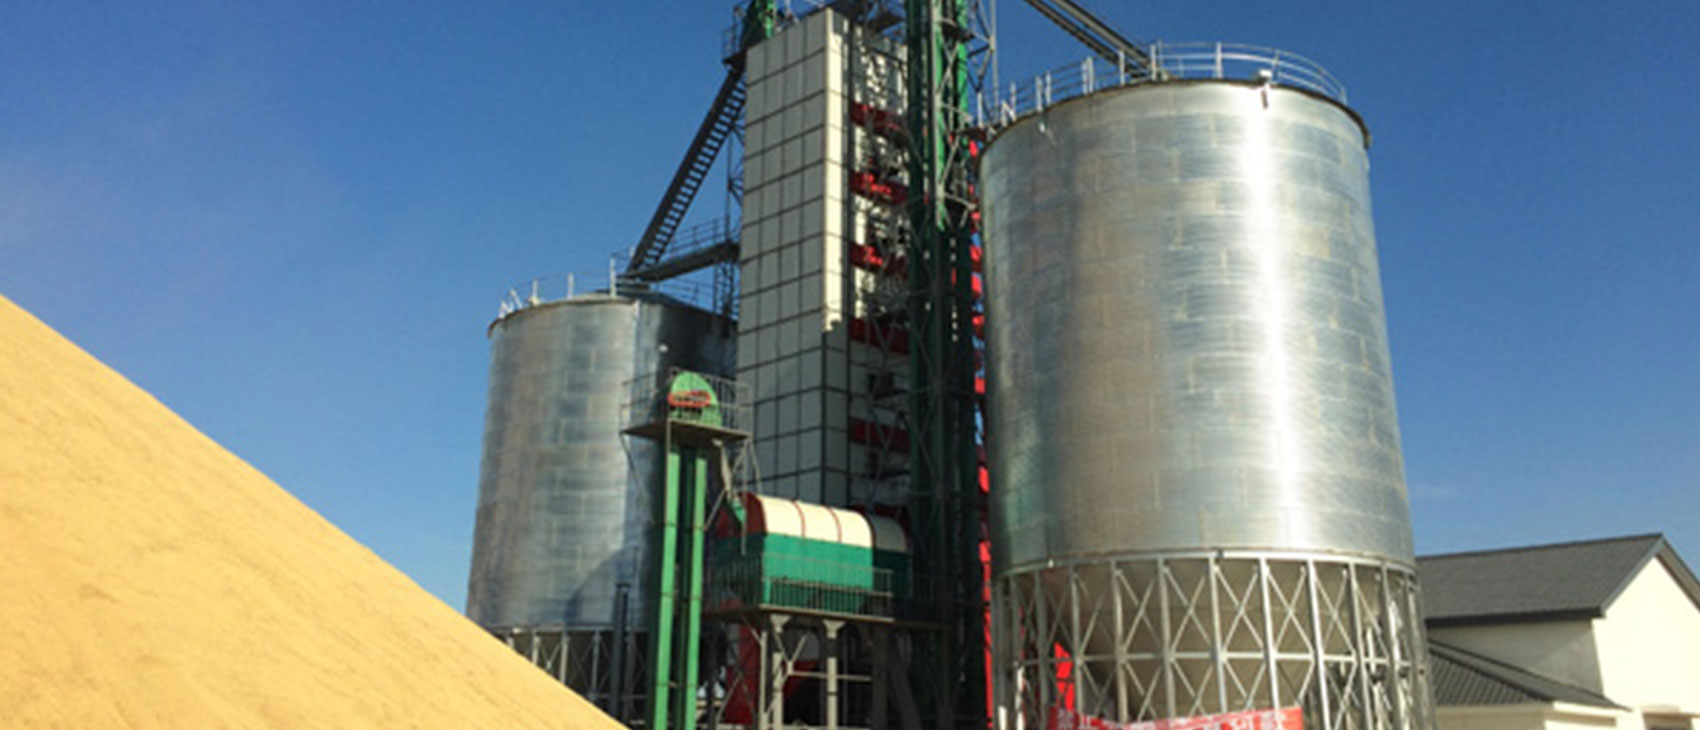 Sino-grain Shuangyashan Depot Corn & Paddy Drying System, Heilongjiang